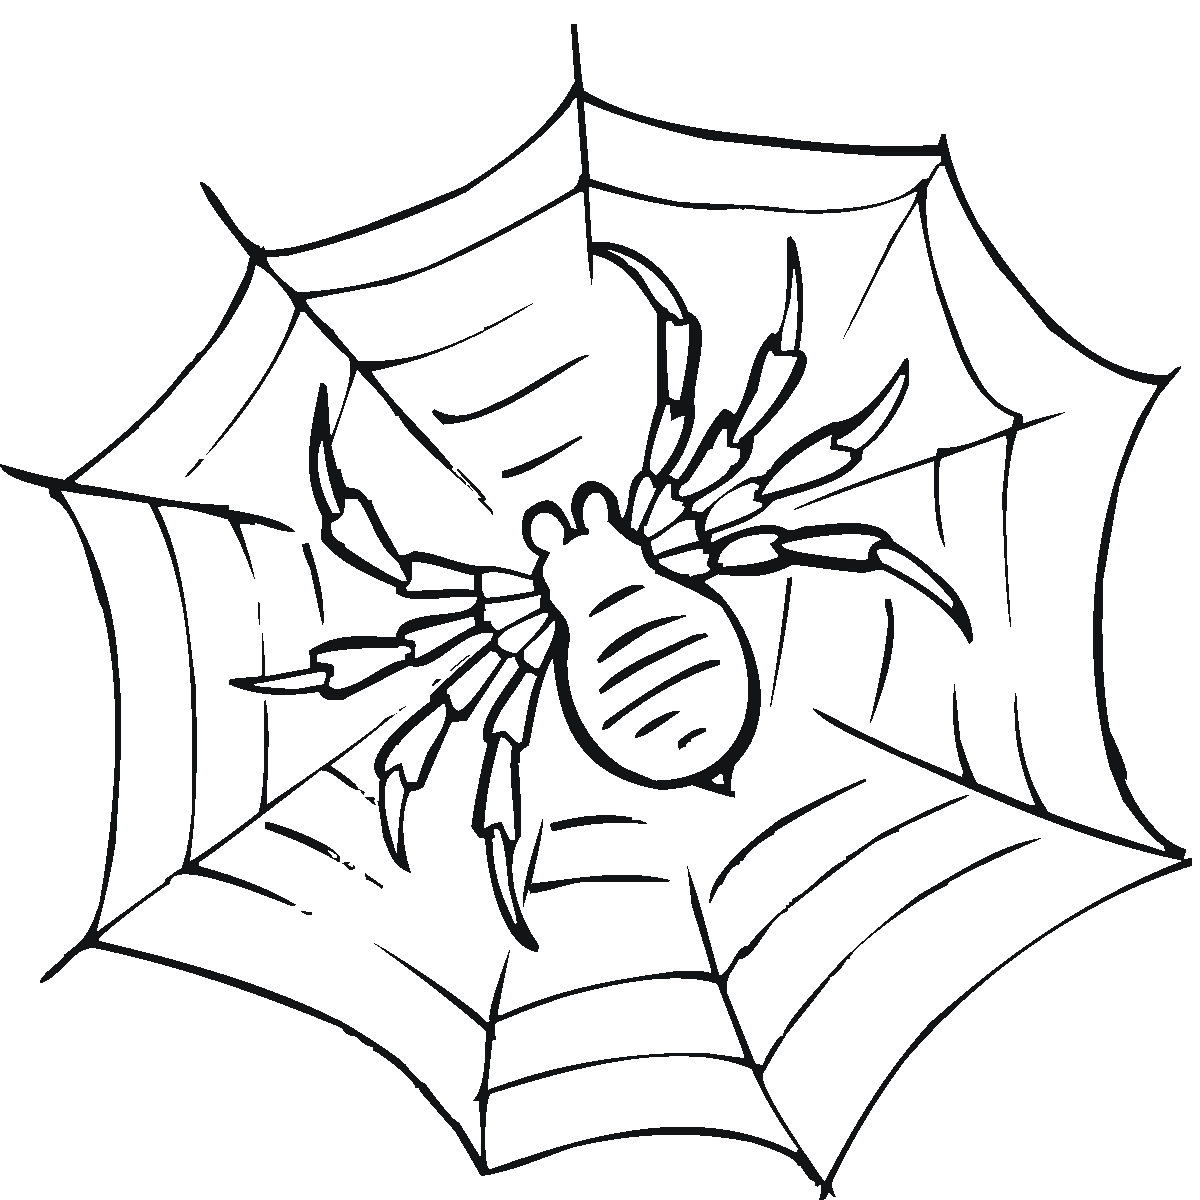 Teia de aranha